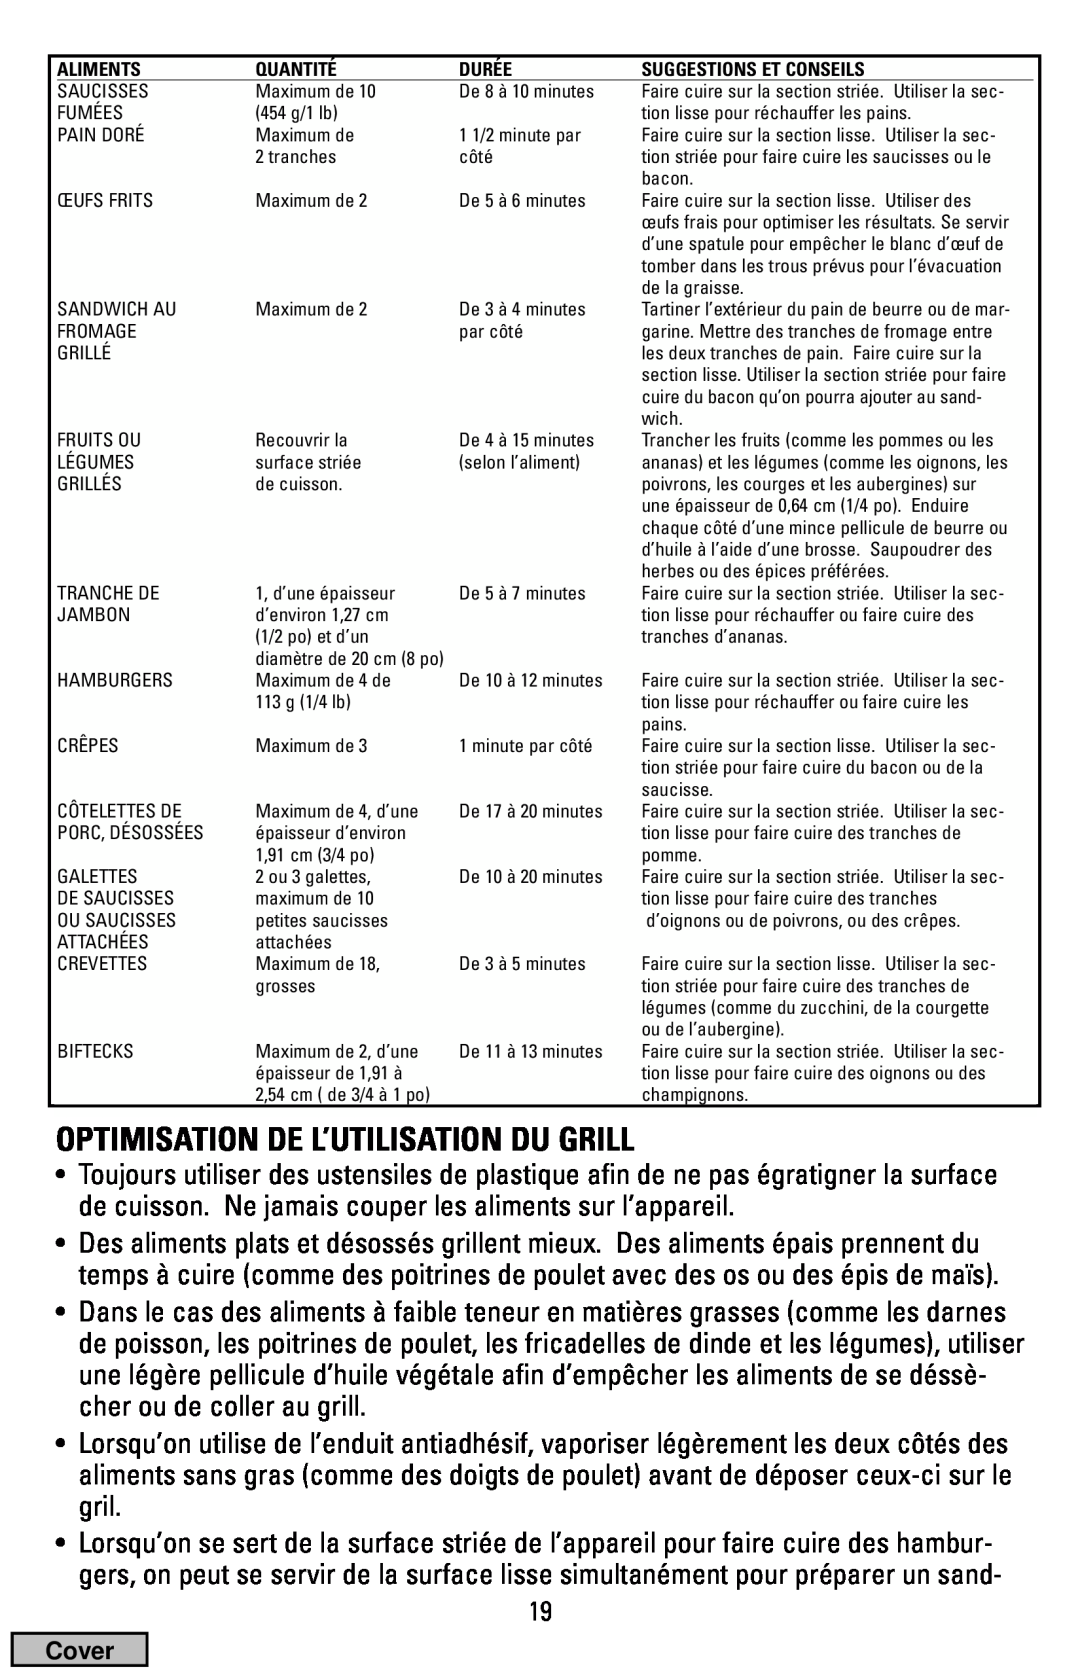 Black & Decker IG100 manual Optimisation De L’Utilisation Du Grill 